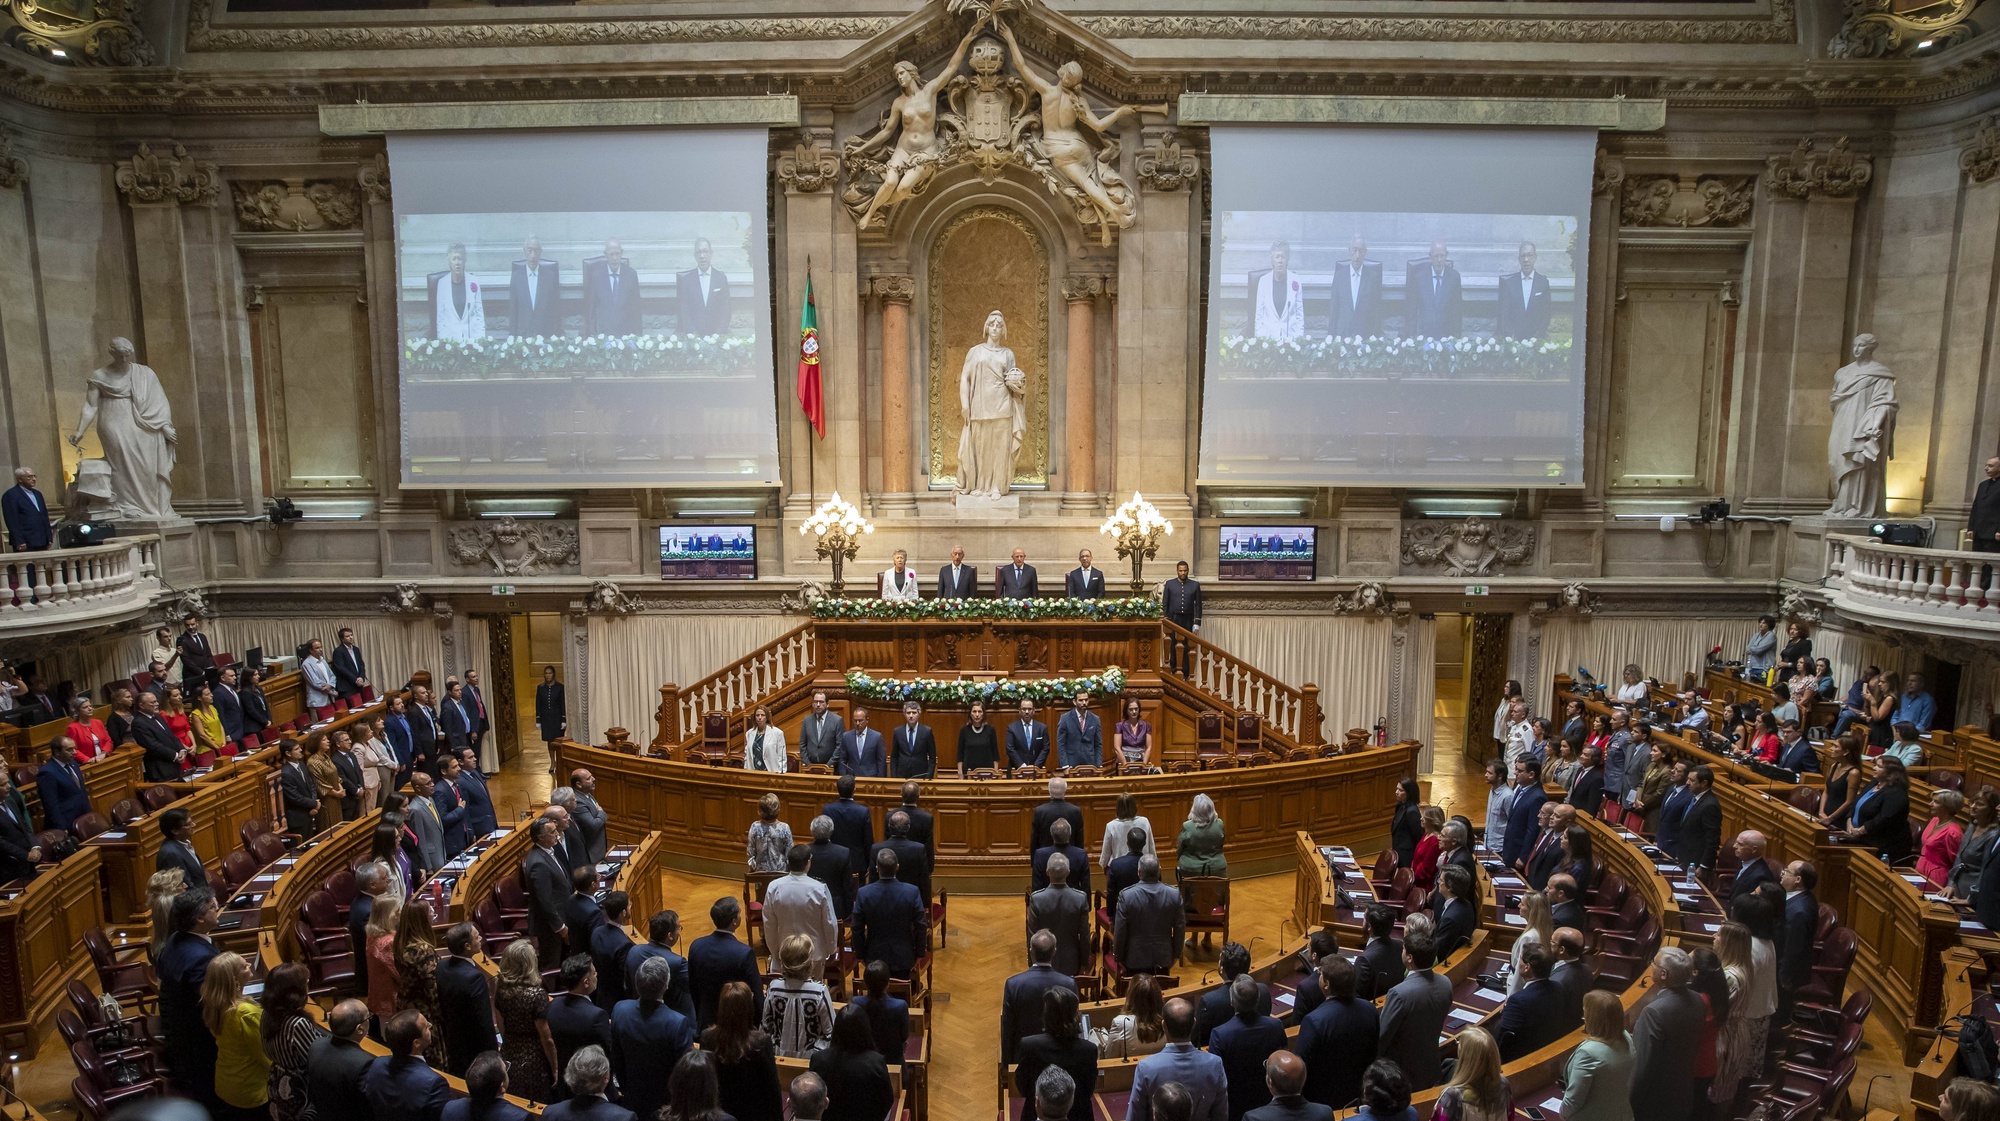 Sessão solene evocativa dos 200 anos da aprovação da Constituição de 1822, na Assembleia da República, em Lisboa, 23 de setembro 2022. JOSE SENA GOULAO/LUSA